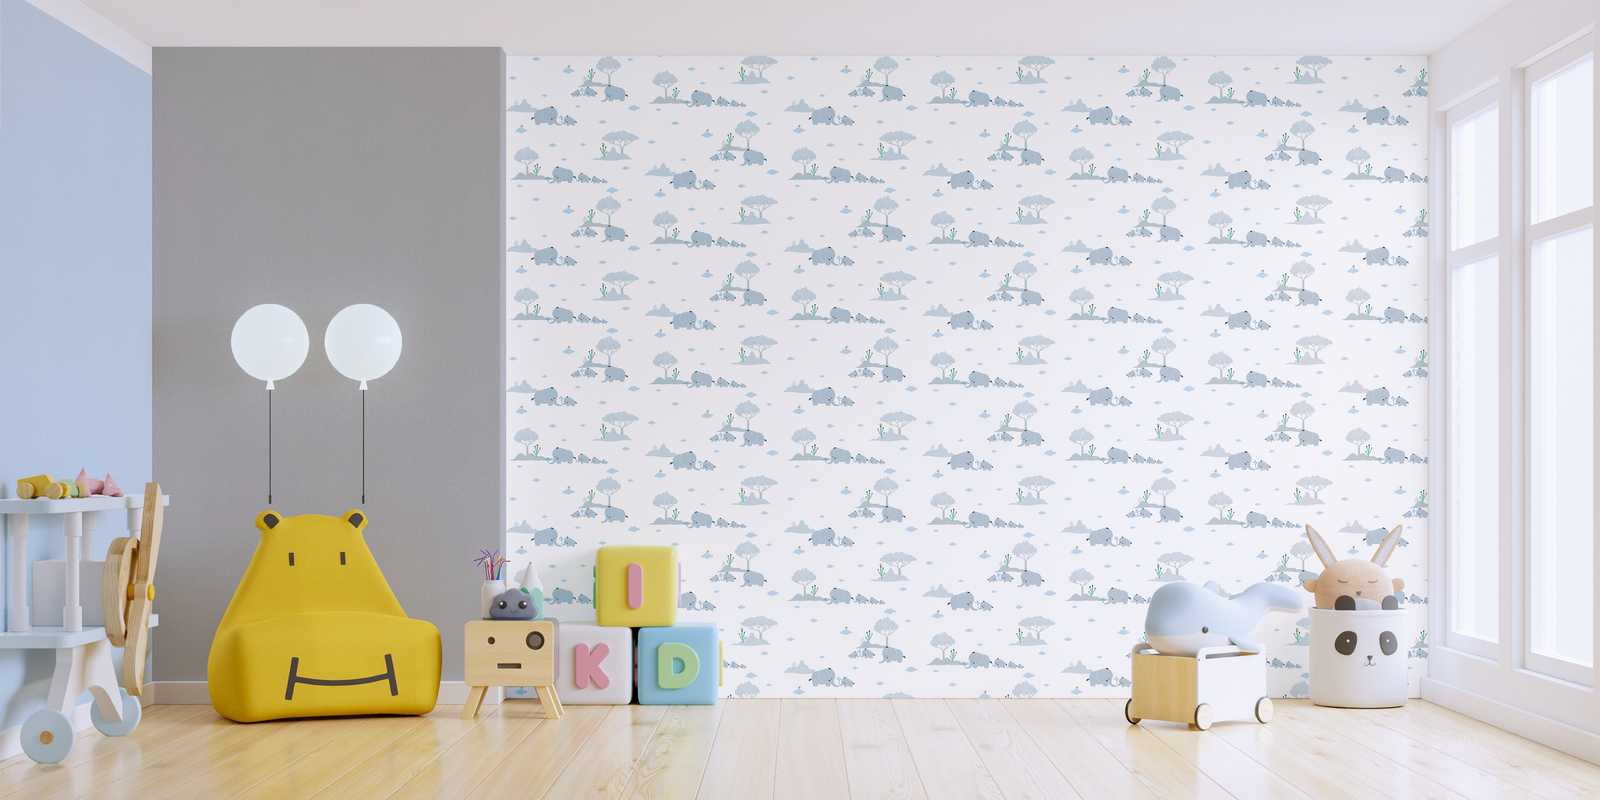             Papier peint chambre enfant garçon éléphants & paysage - bleu, gris, blanc
        